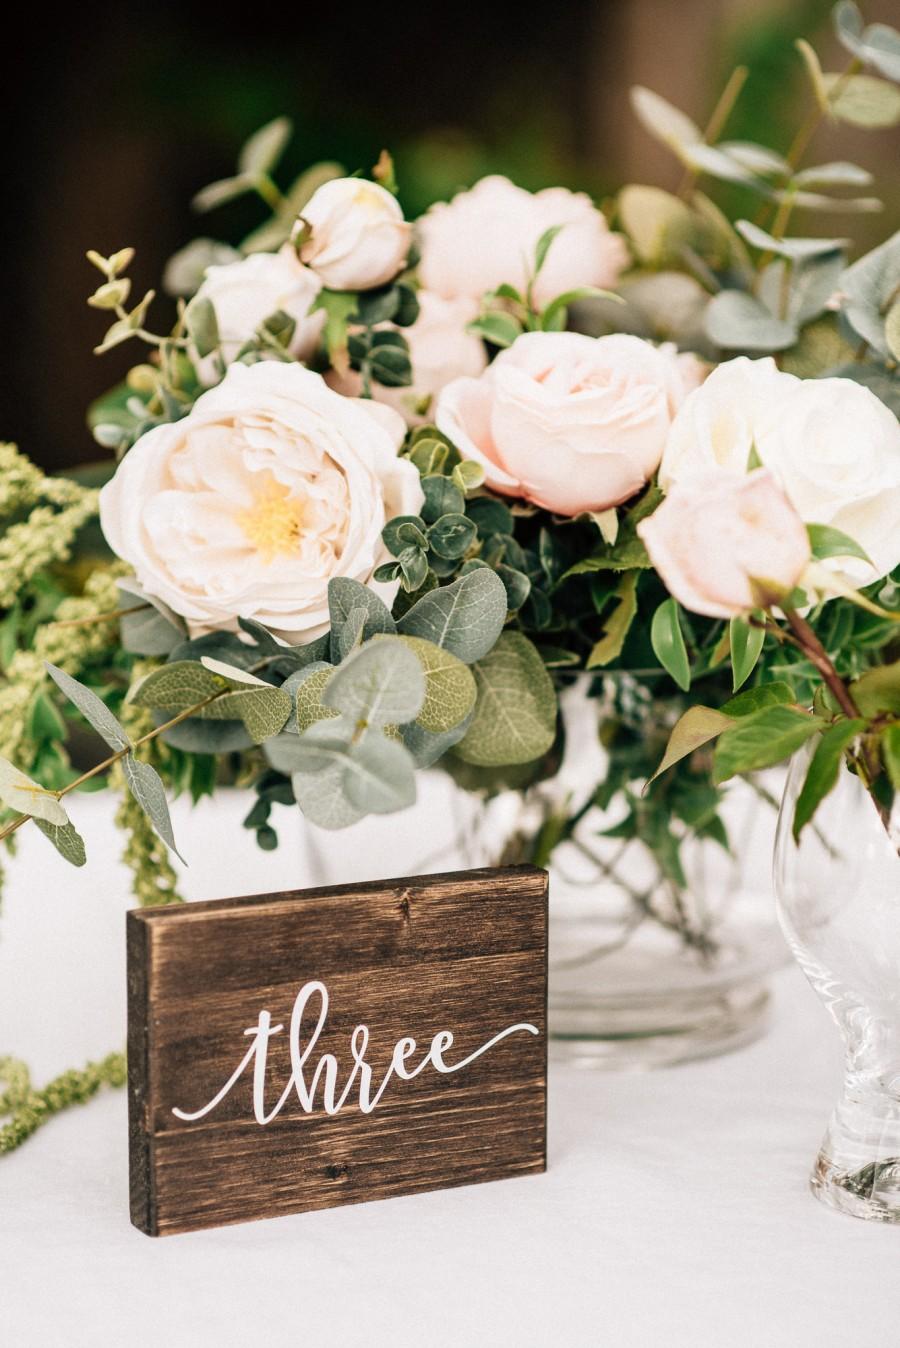 زفاف - Wedding Table Numbers - Rustic Table Decor - Wooden Table Numbers - Wedding Reception Decor